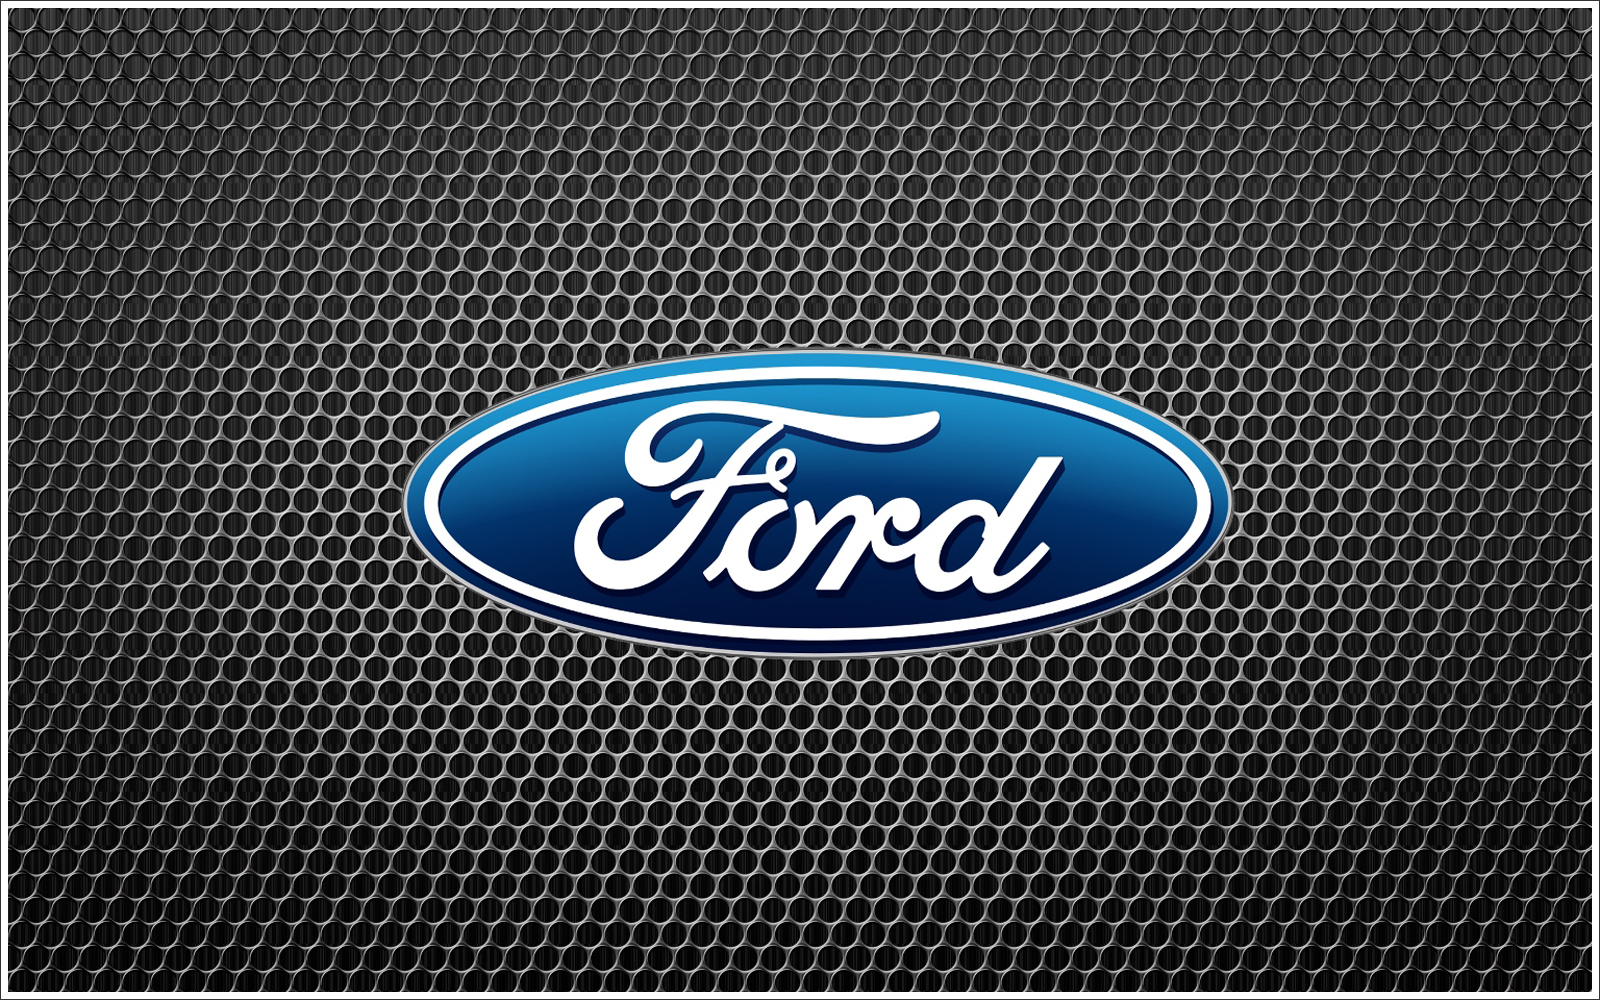 Ford logo wallpaper - 🧡 Ford Logo Wallpapers Wallpapers - All Superio...